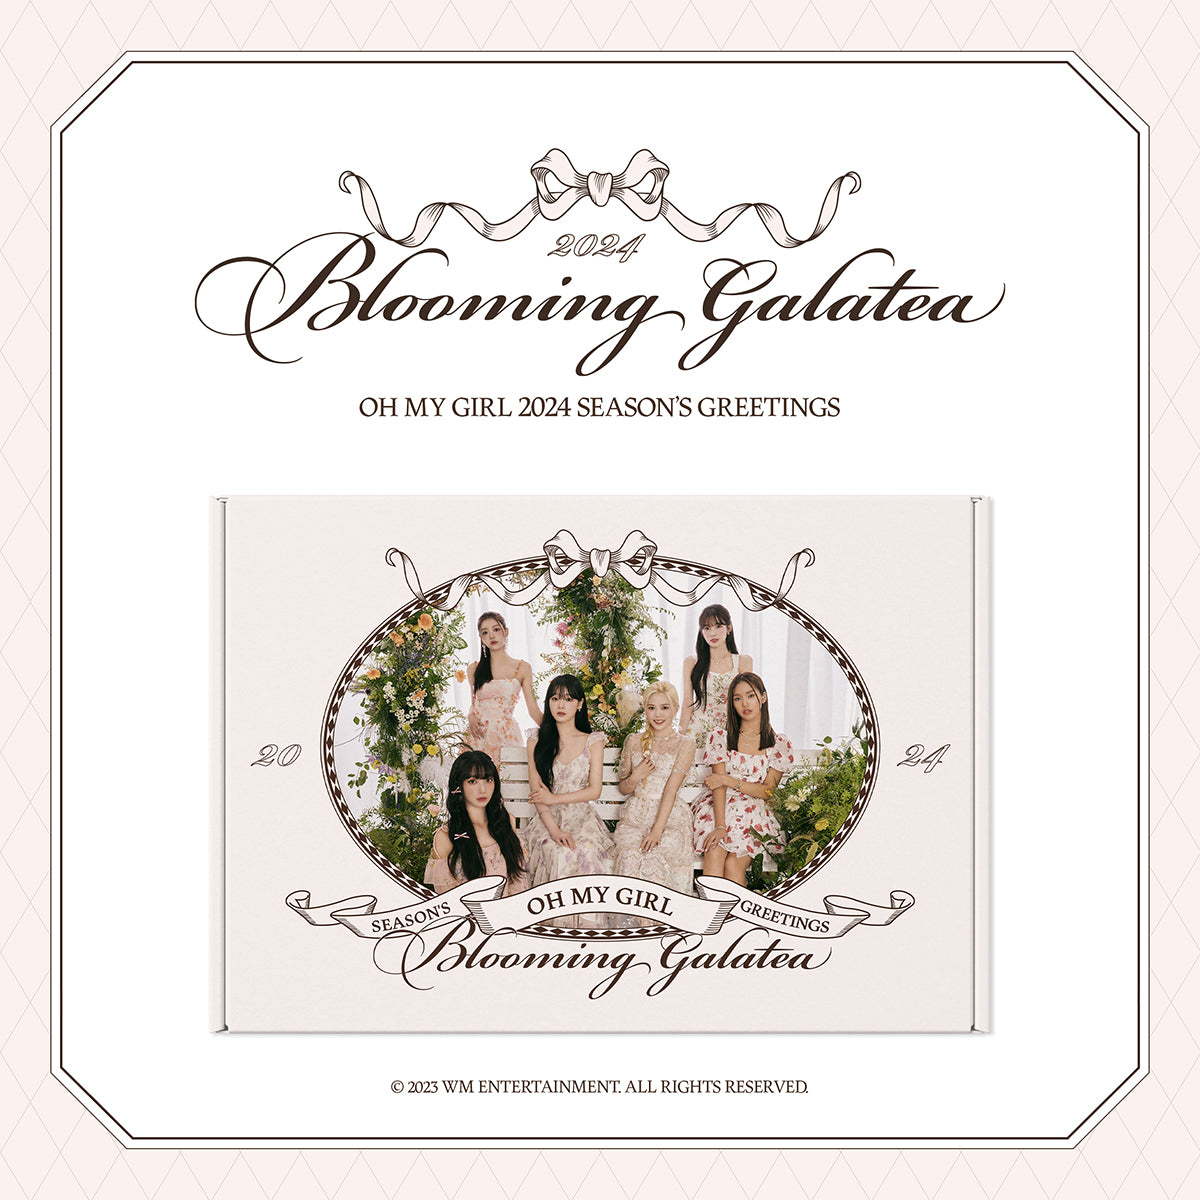 OH MY GIRL - 2024 SEASON'S GREETINGS [Blooming Galatea] [PRE-ORDER]